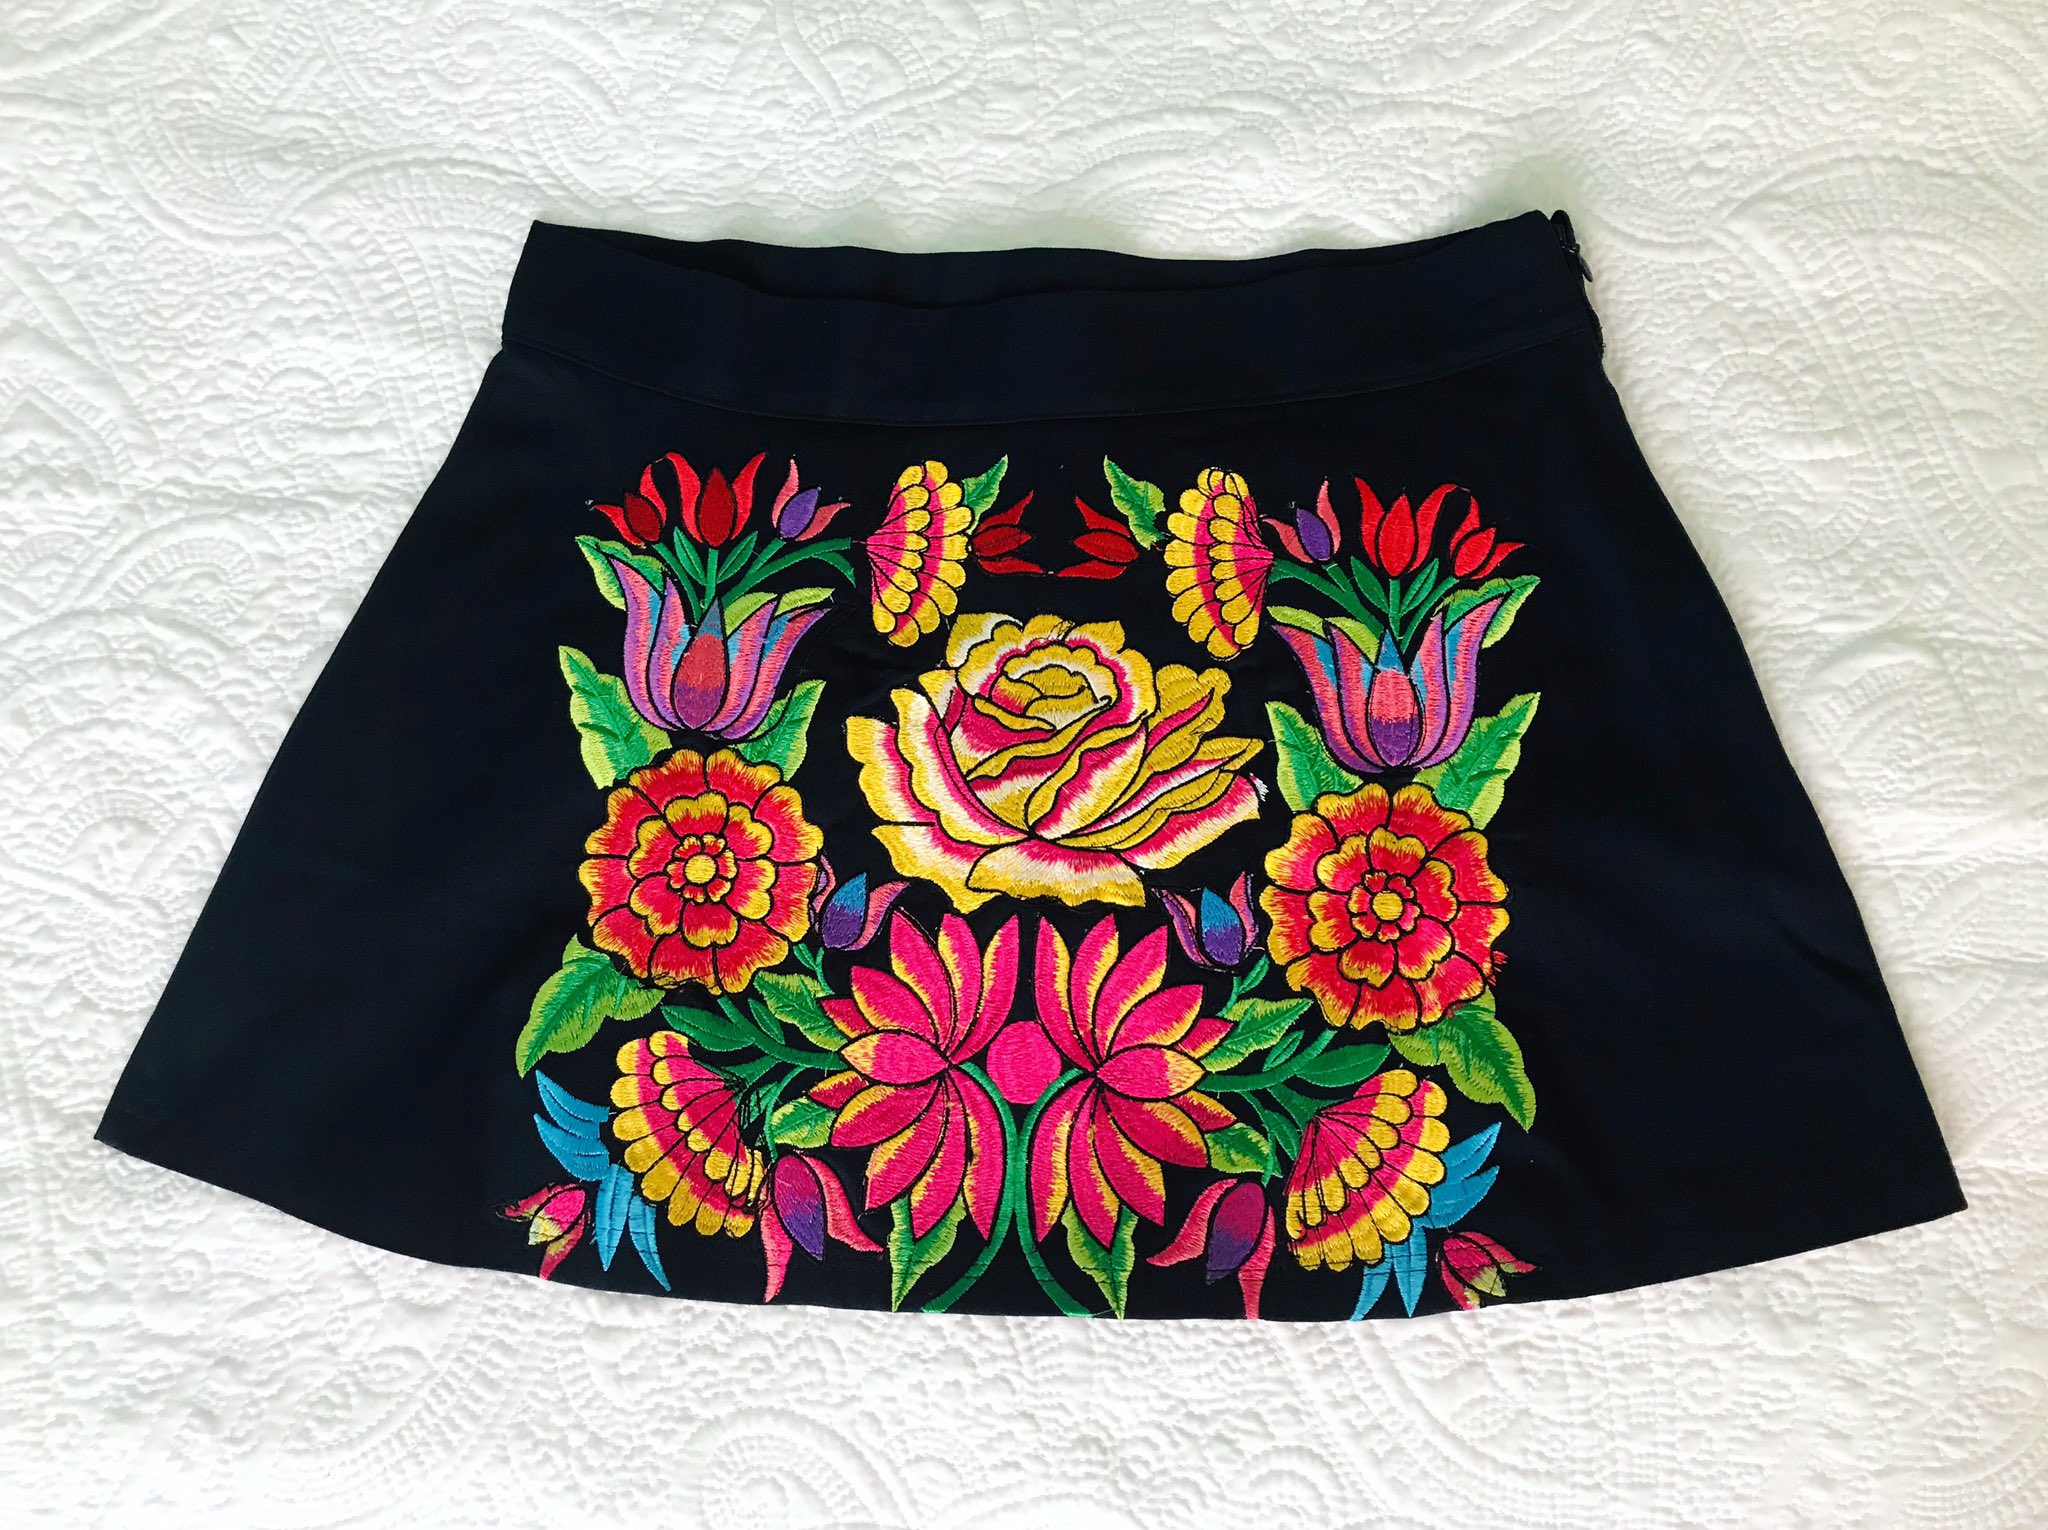 Wendy Sulca ar Twitter: "Nueva falda andina adelanto de nuestra nueva colección de verano “SUMAQ” ✨Edición Limitada✨ Tenemos en tallas S, M y L Material: Drill Stresh (100 % algodón) Pedidos